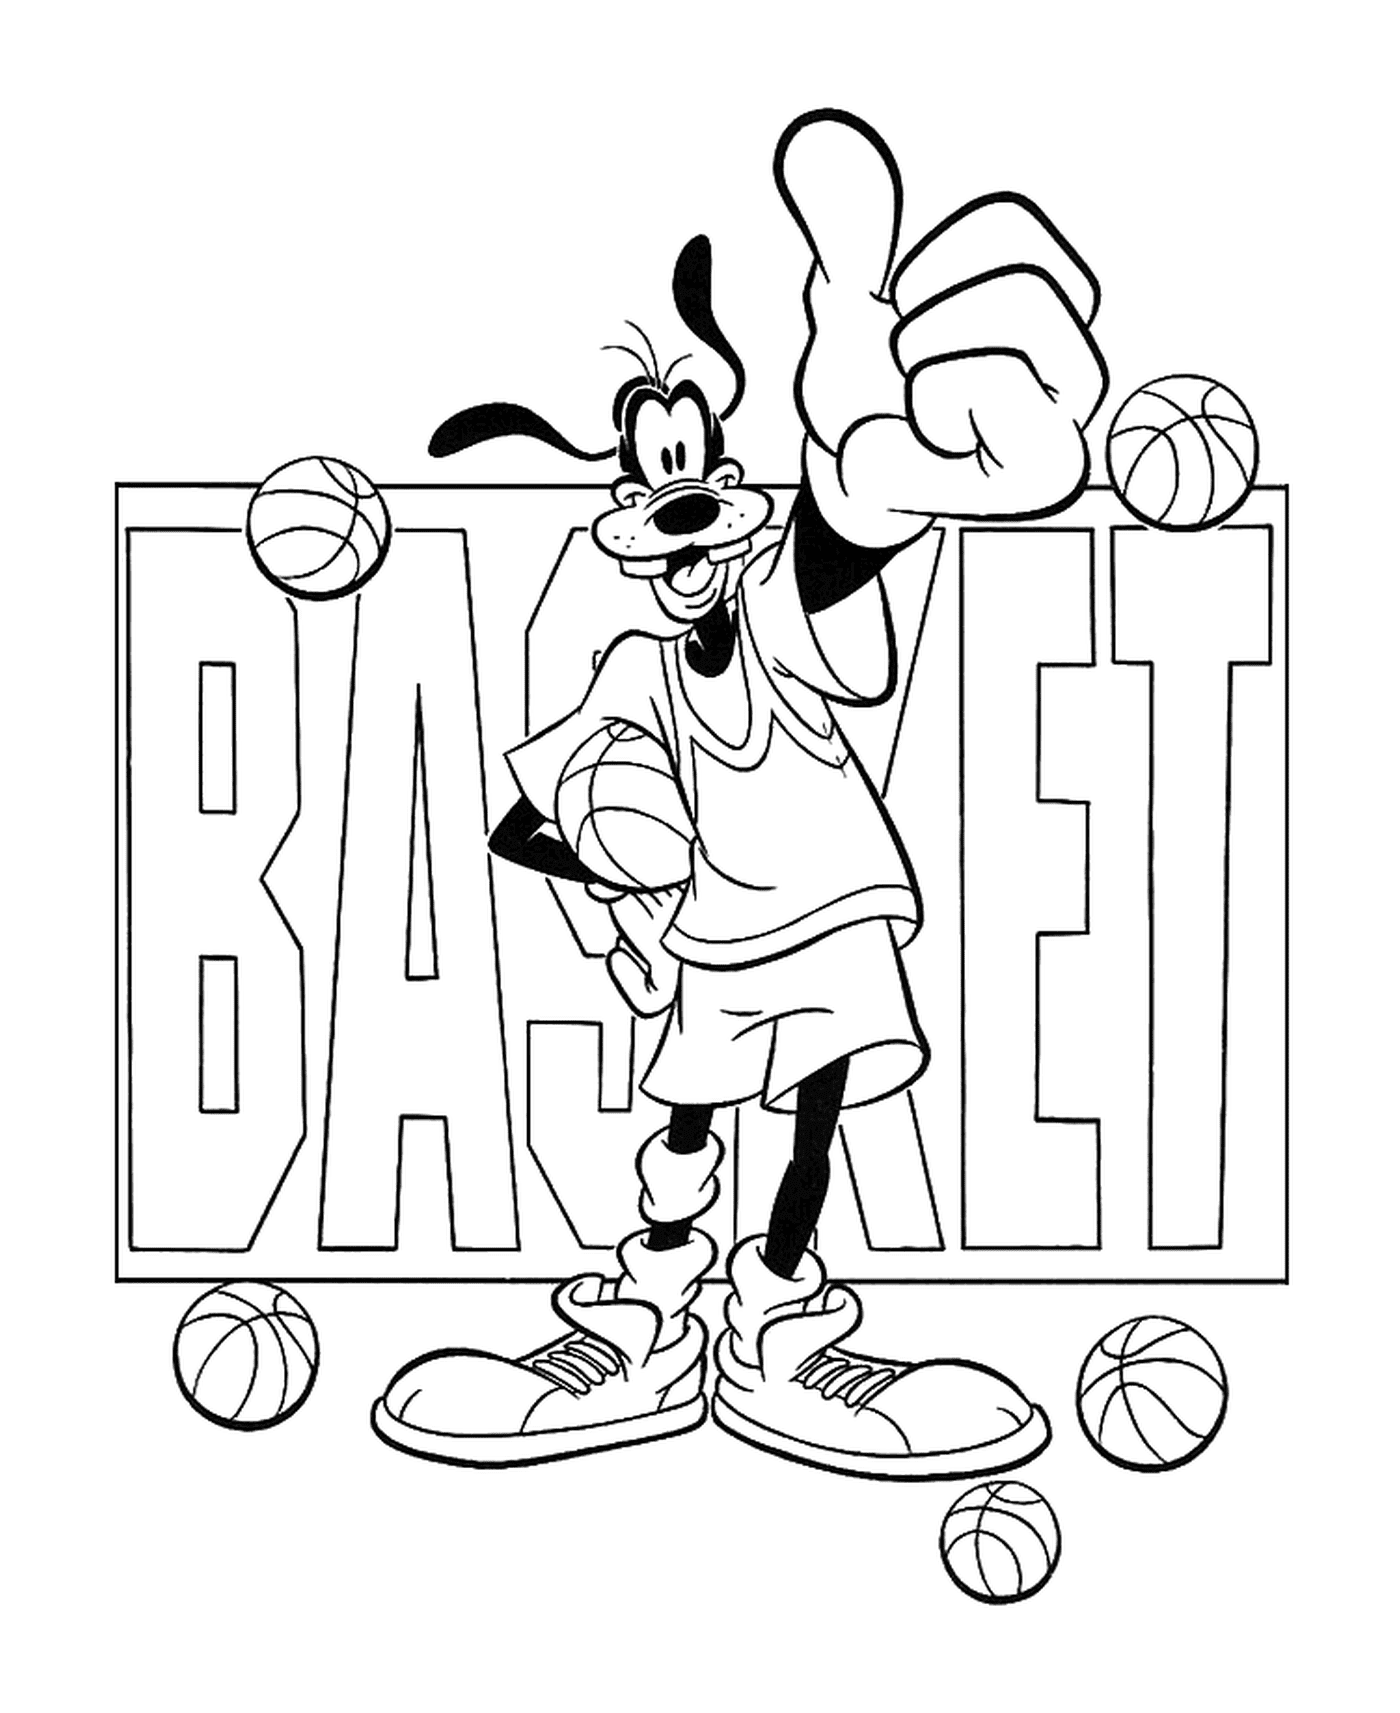  دينغو يحب كرة السلة 